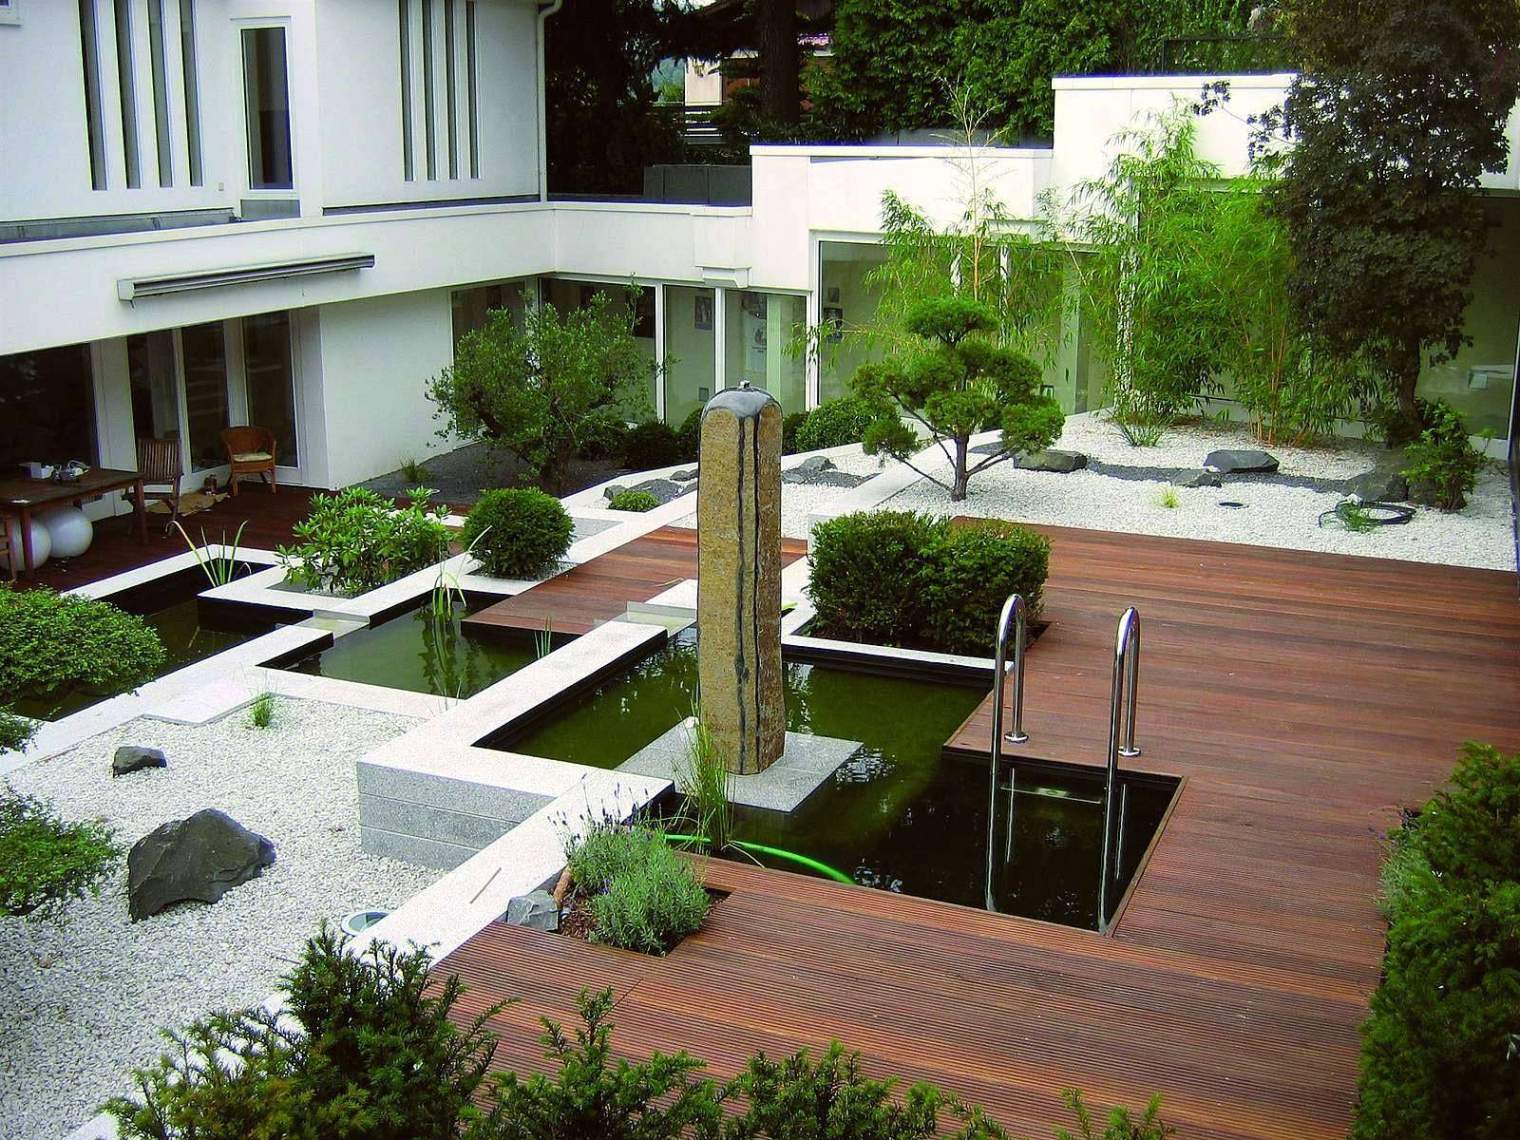 Kleine Gärten Neu Gestalten Best Of 40 Elegant Japanische Gärten Selbst Gestalten Das Beste Von